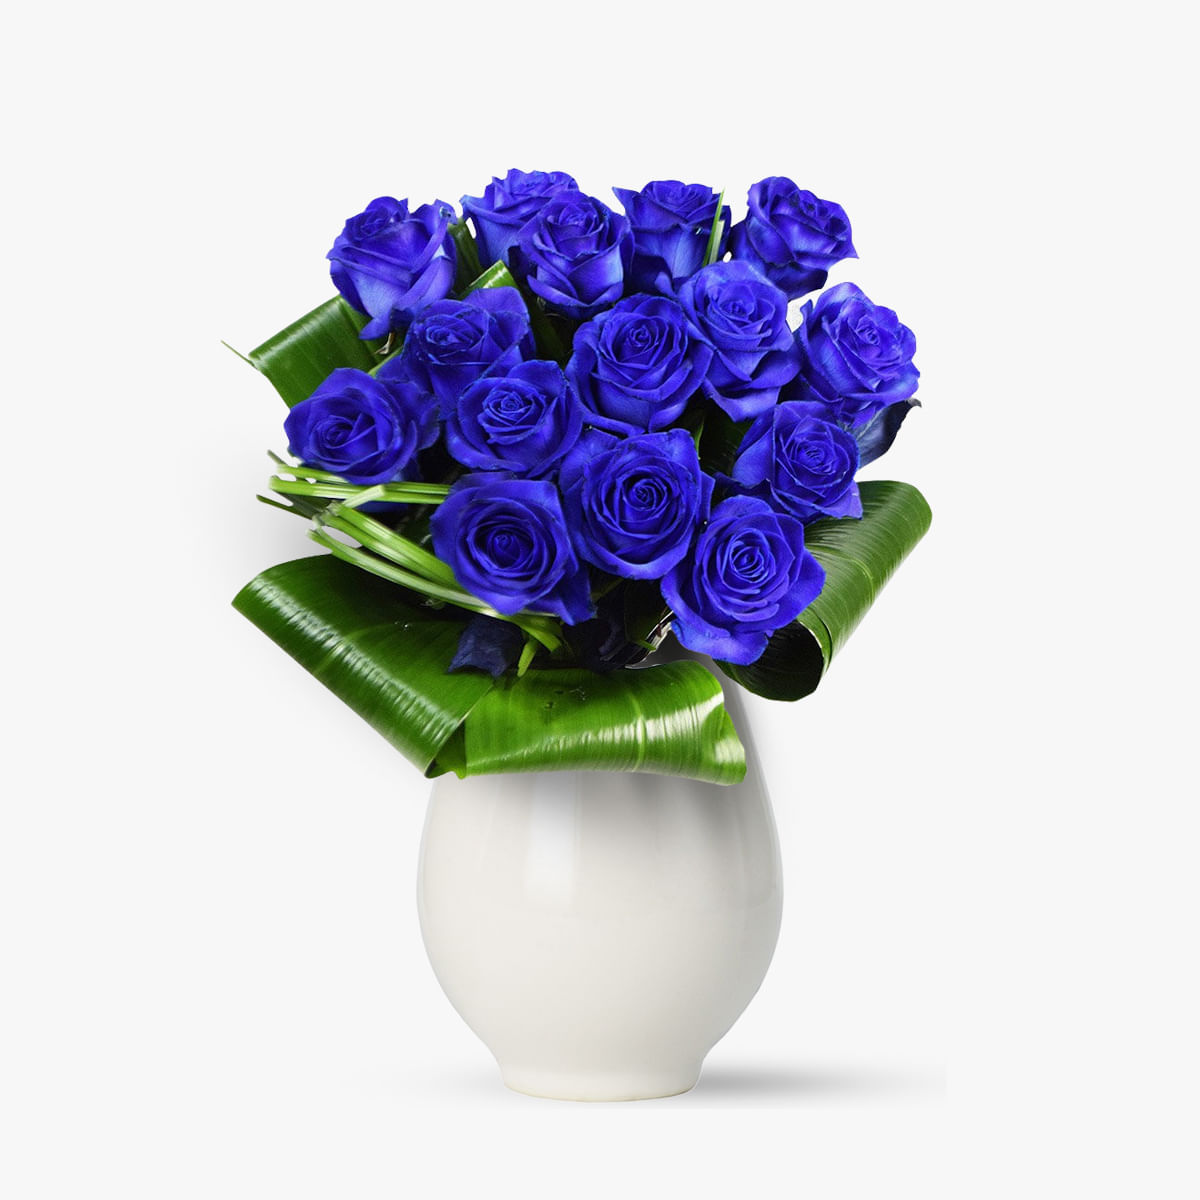 Buchet de 15 trandafiri albastri floria.ro